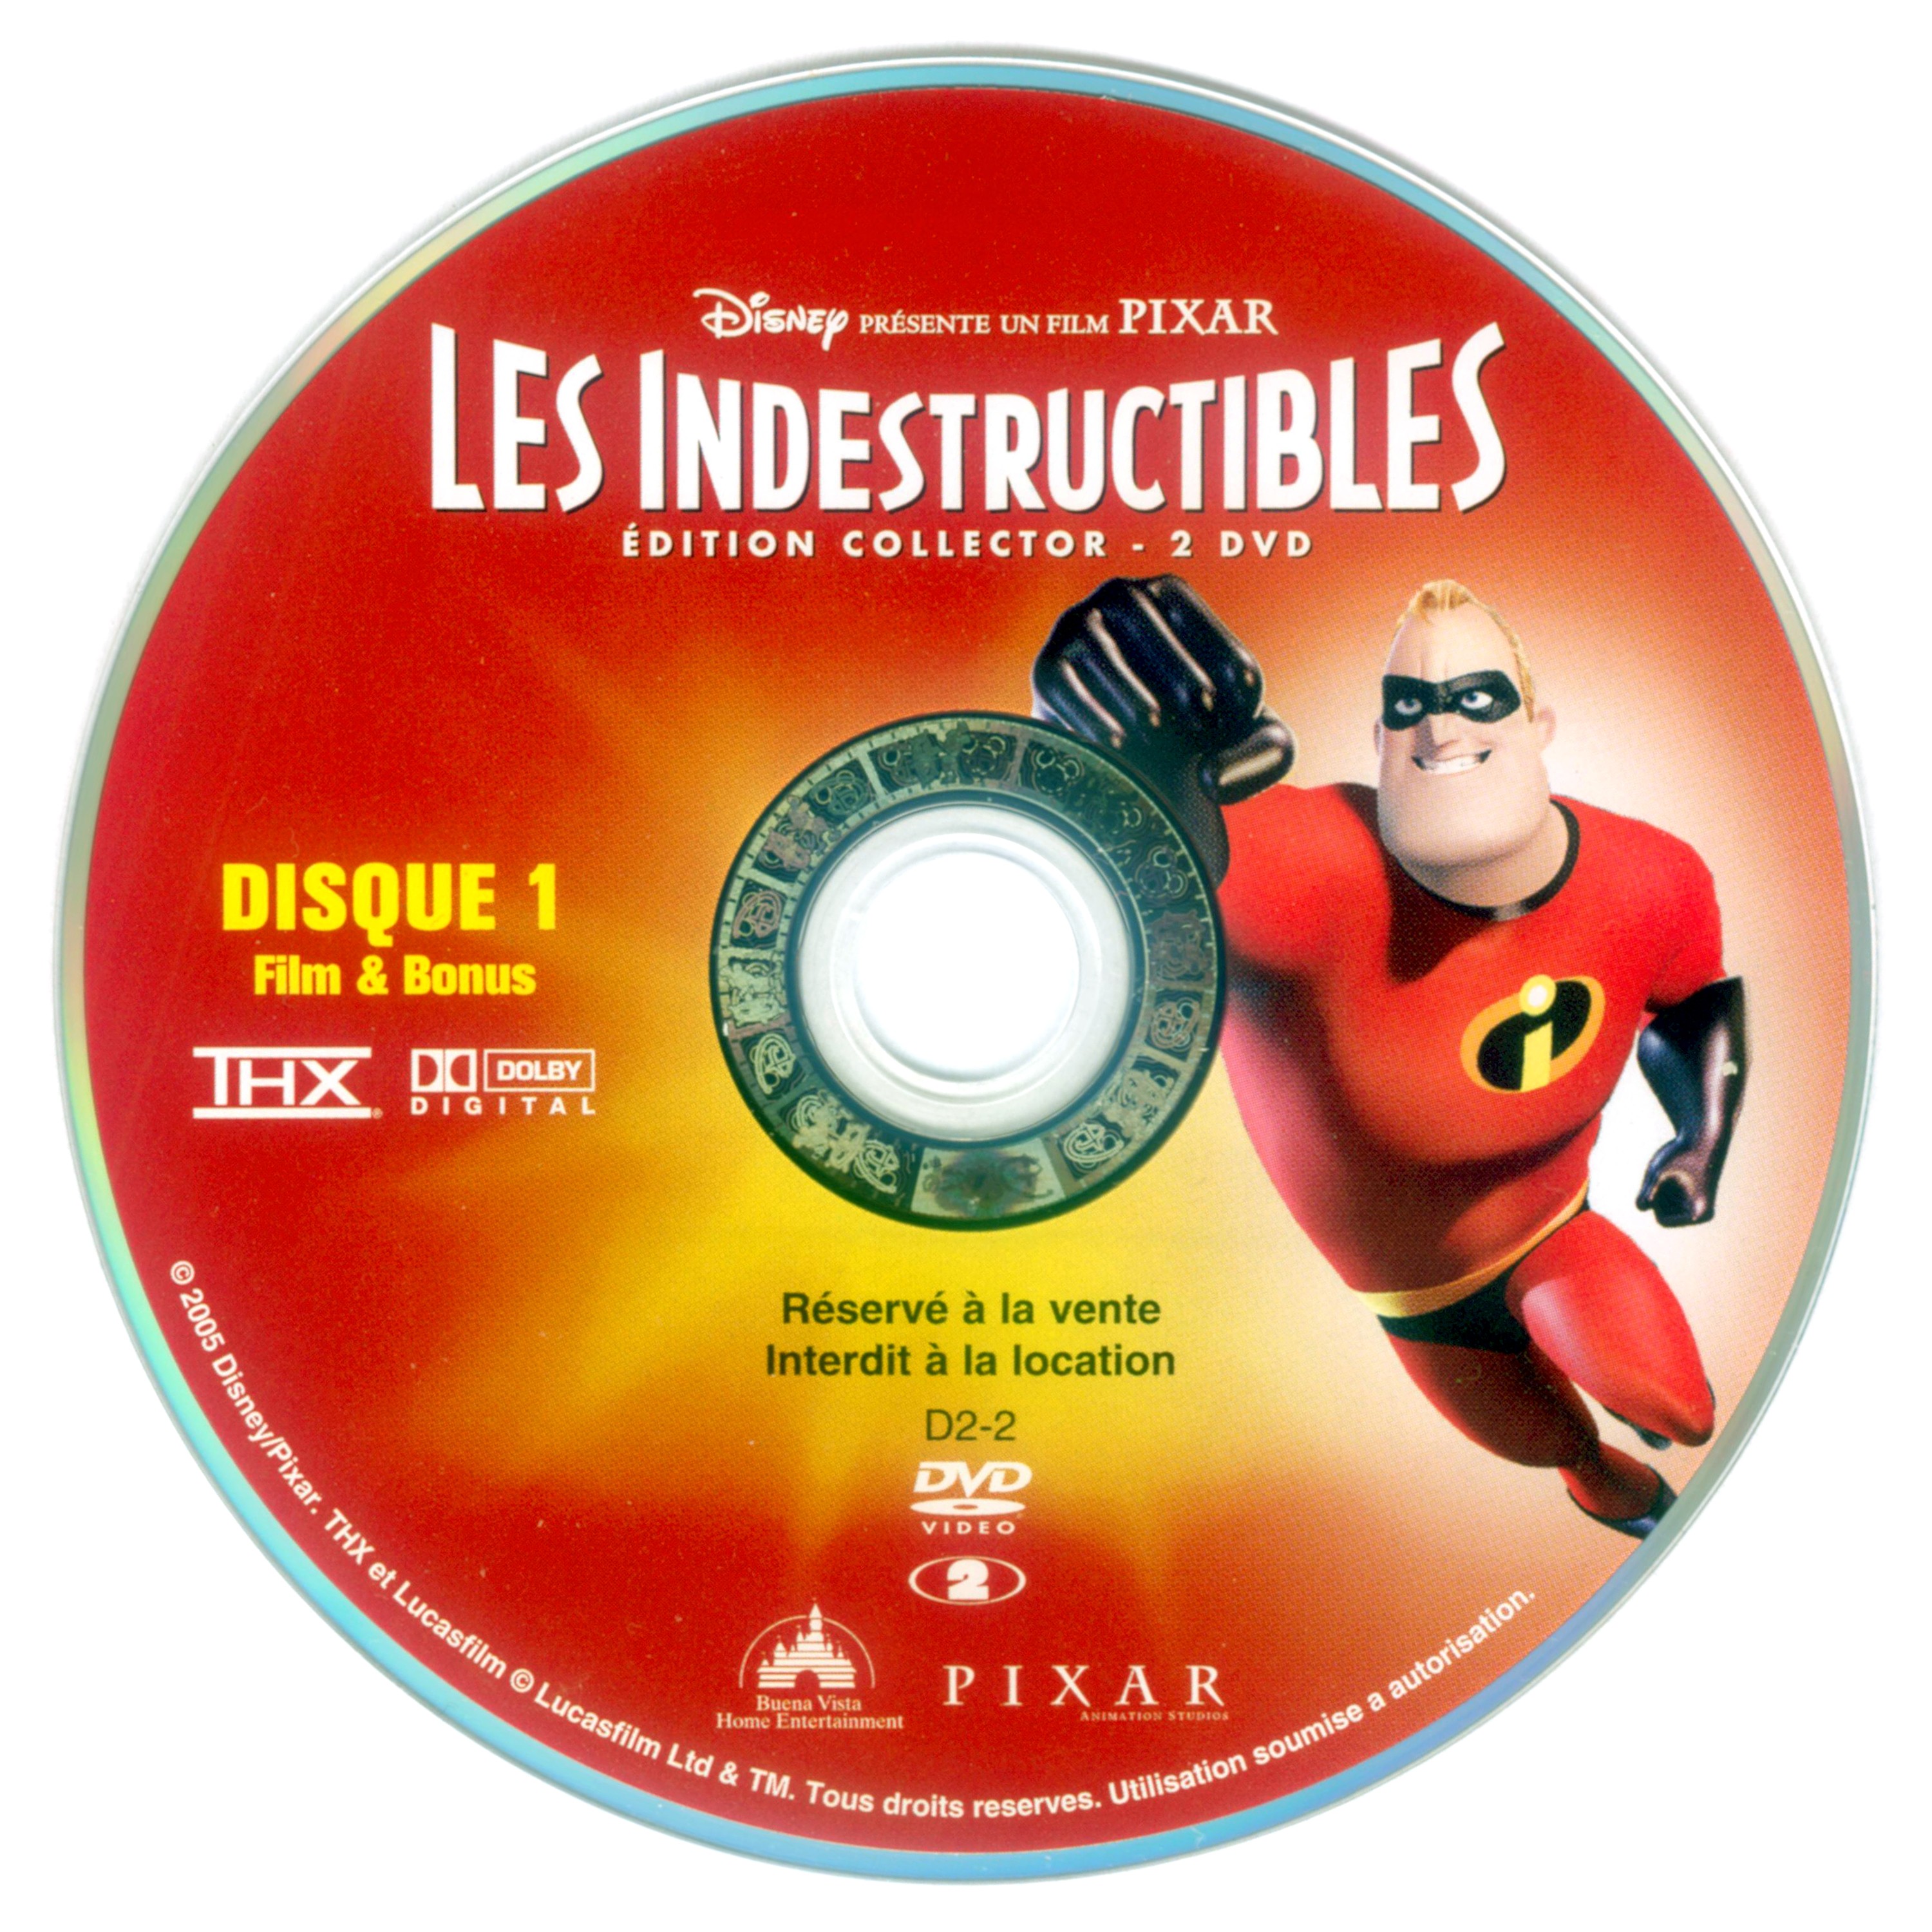 Les indestructibles DISC 1